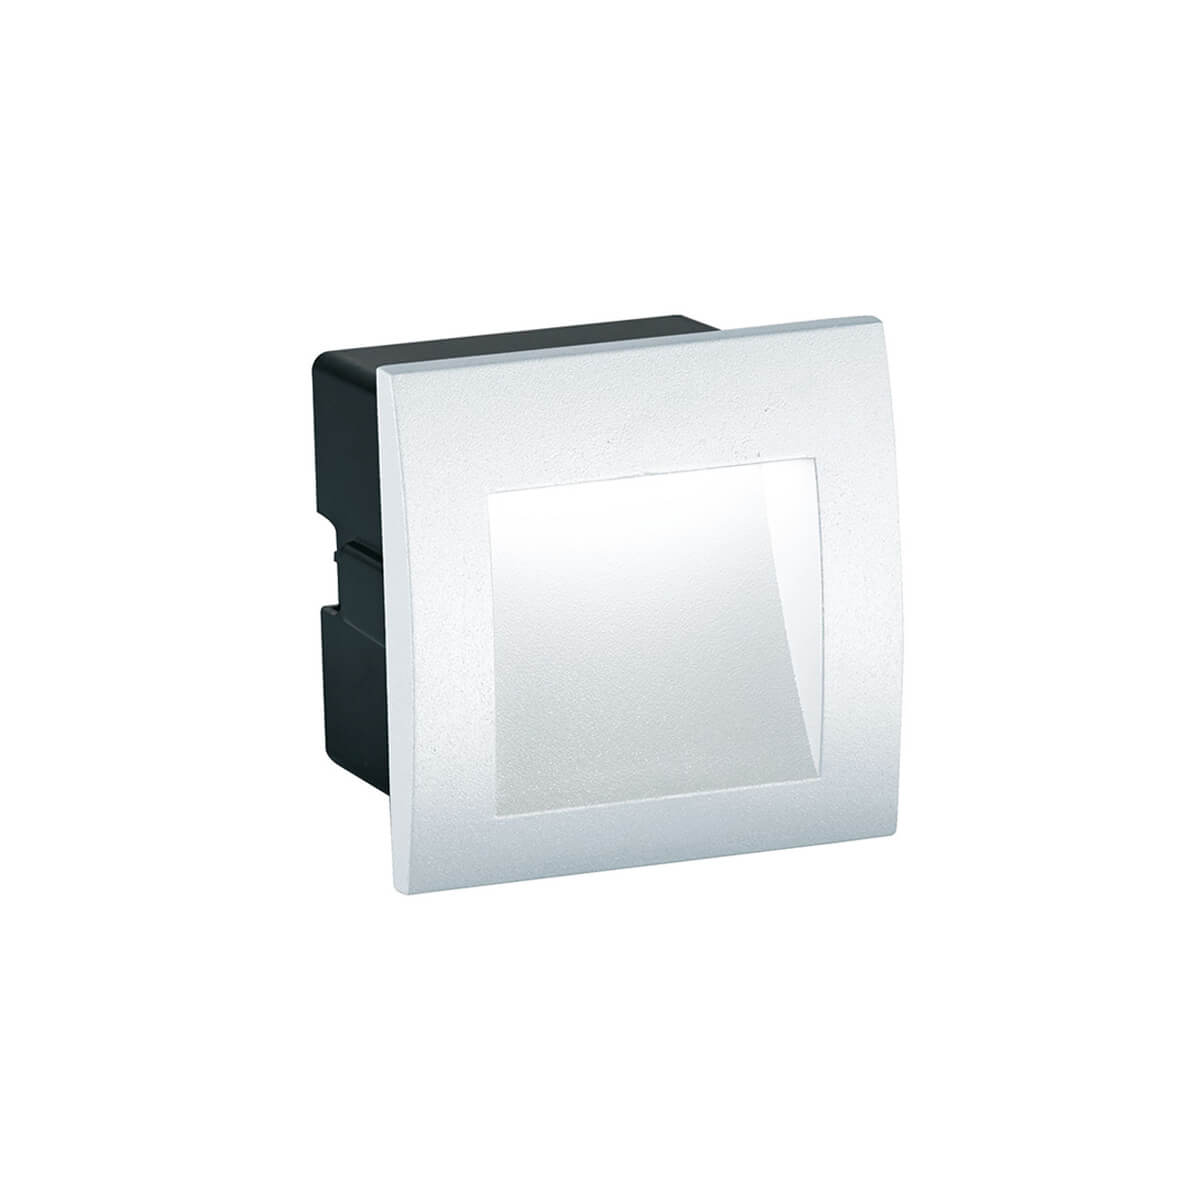 RIVA W1: Aplica moderna alba pentru iluminat exterior, cu tehnologie LED de 1,5W, oferind eleganta si eficienta energetica